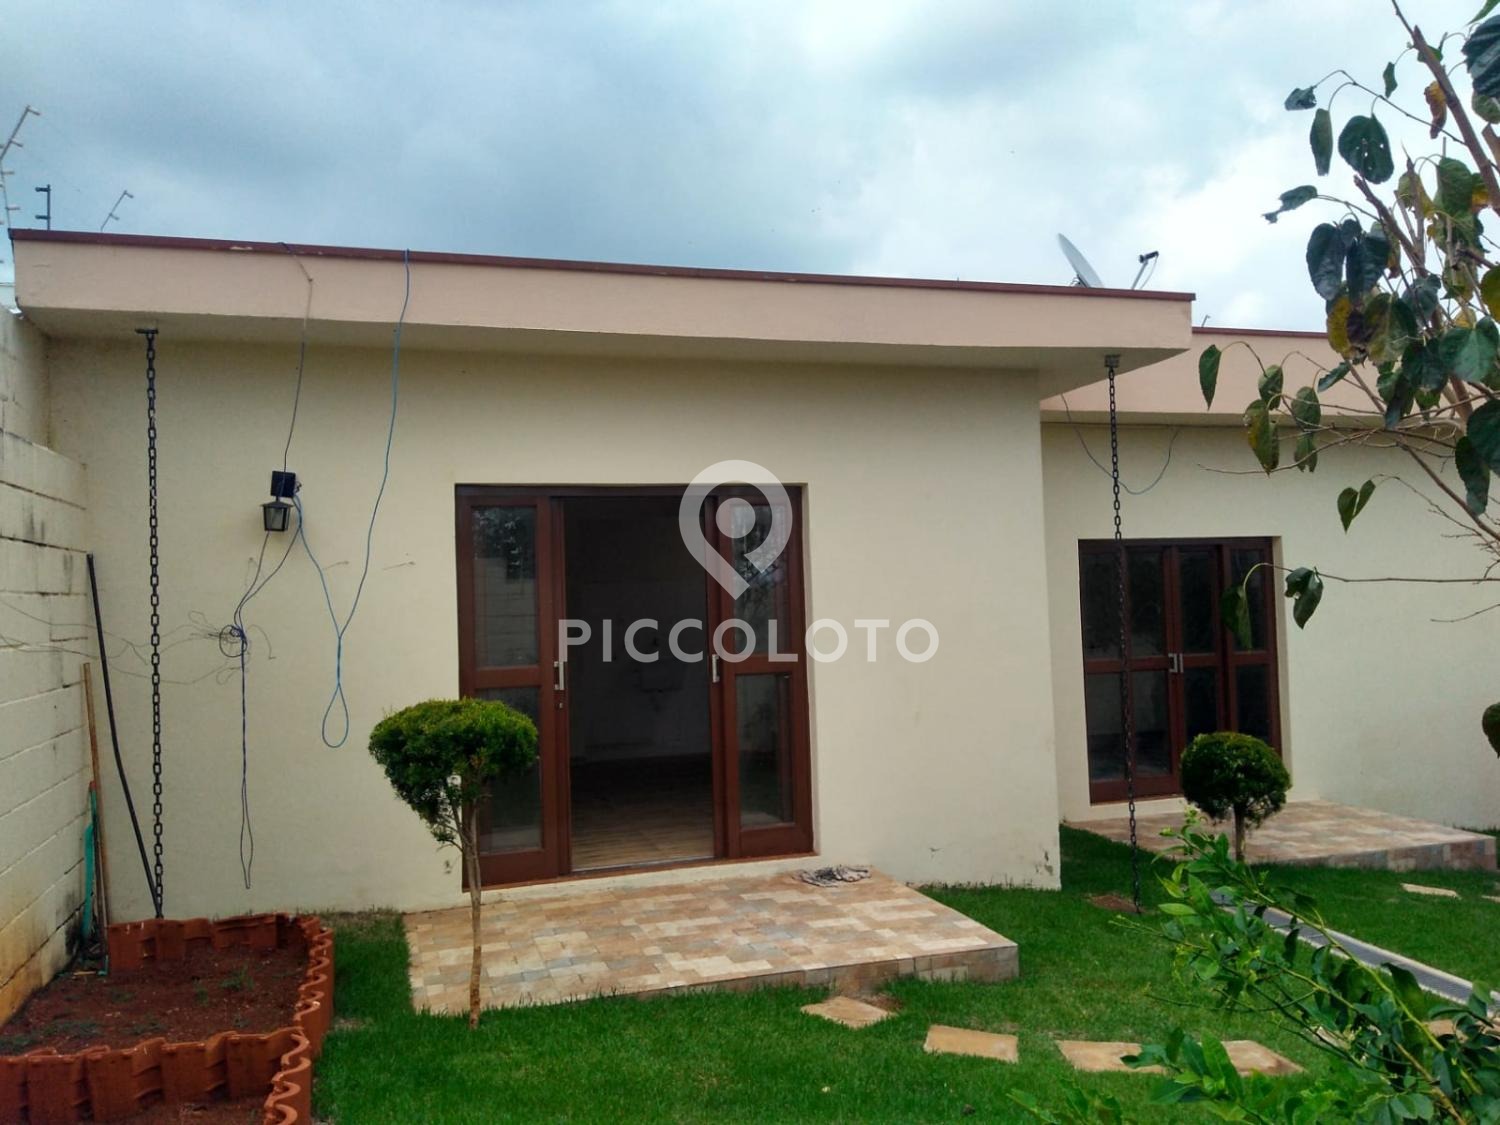 Piccoloto -Casa para alugar no Parque das Universidades em Campinas